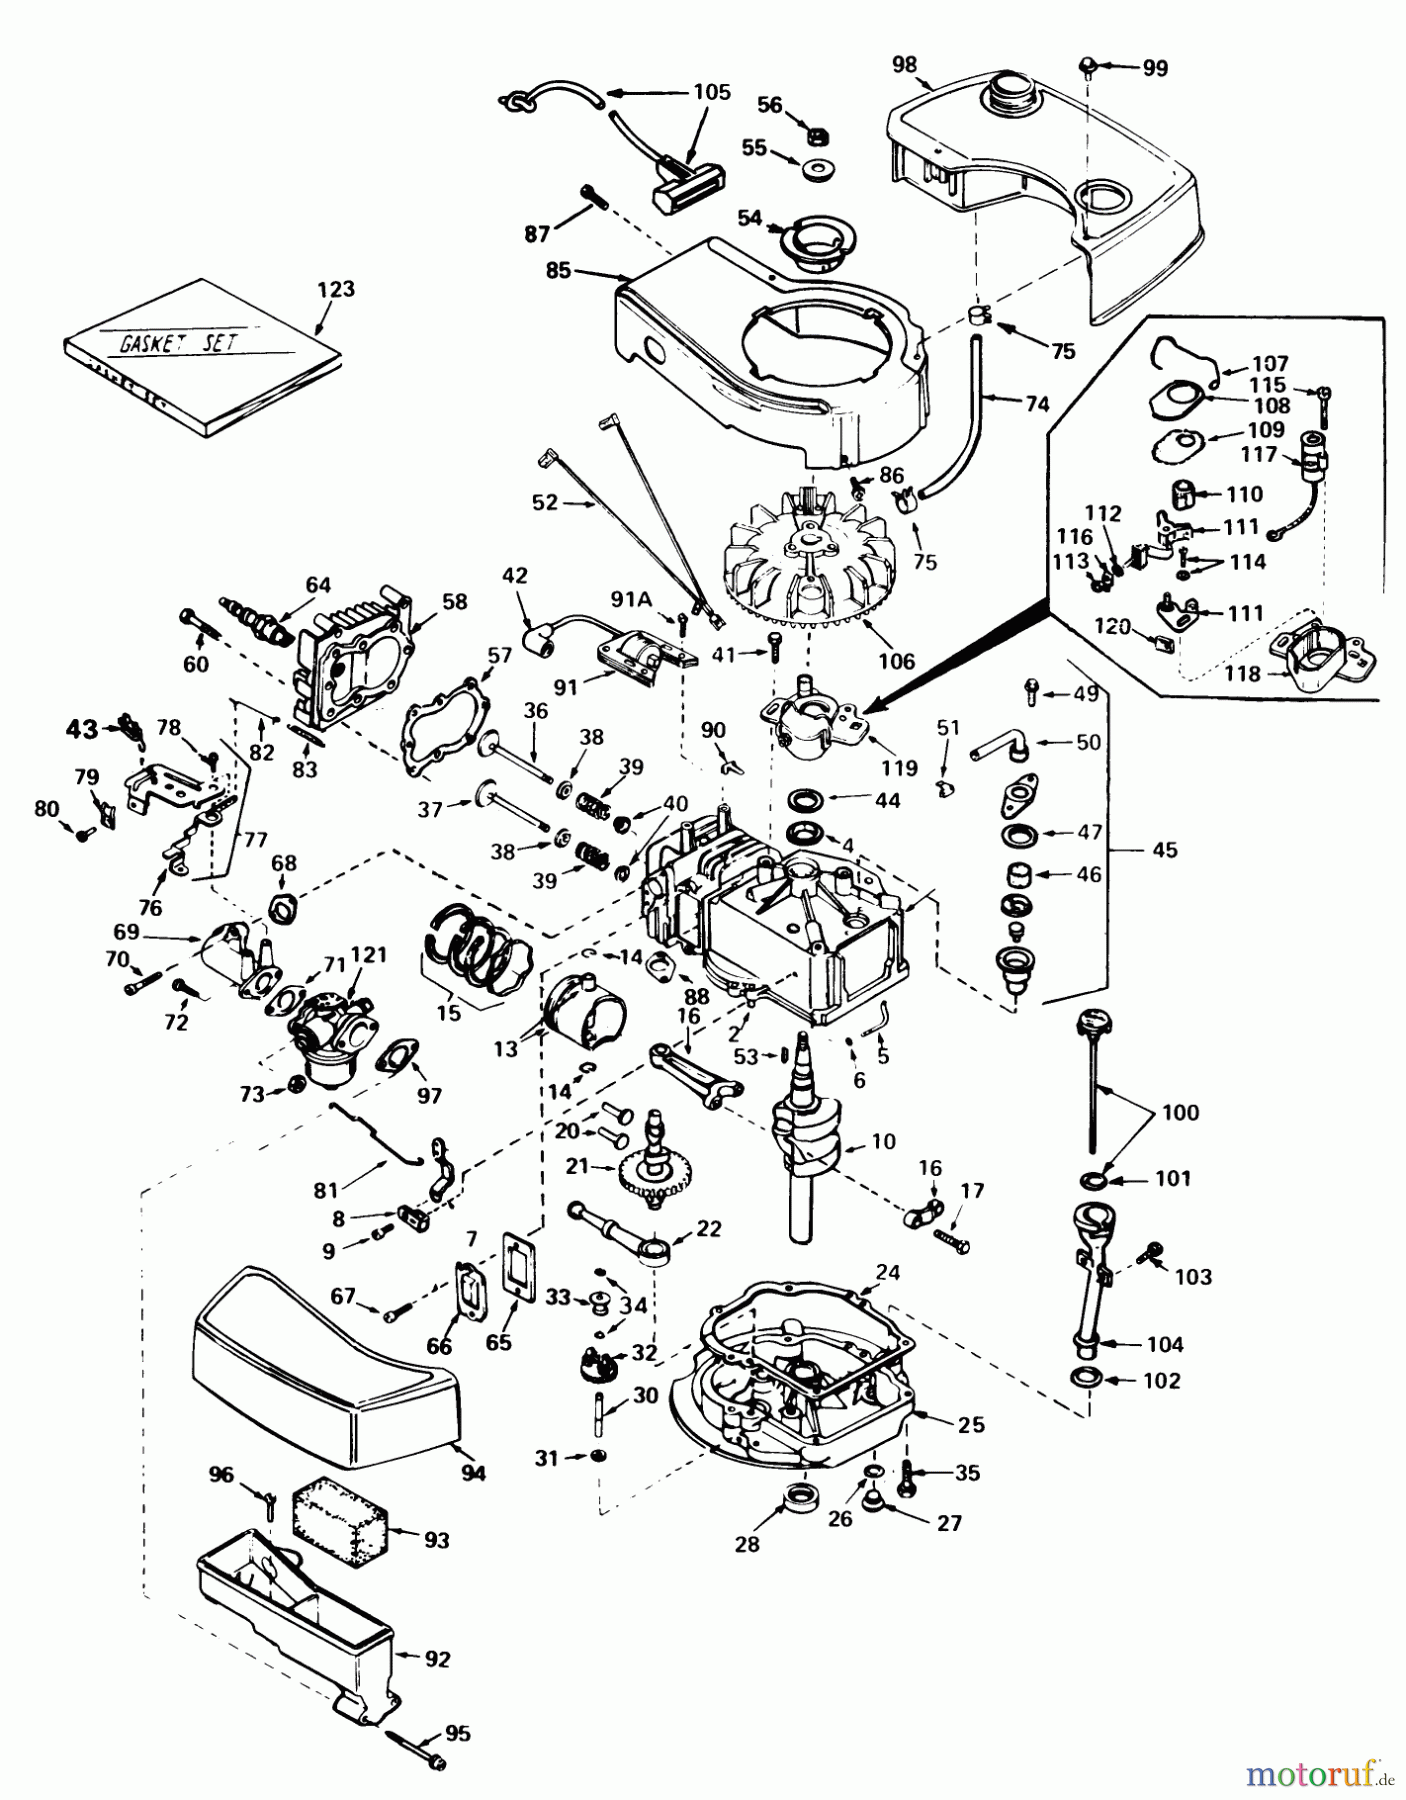  Toro Neu Mowers, Walk-Behind Seite 1 20715 - Toro Lawnmower, 1980 (0000001-0999999) ENGINE TECUMSEH MODEL NO. TNT 100-10065C